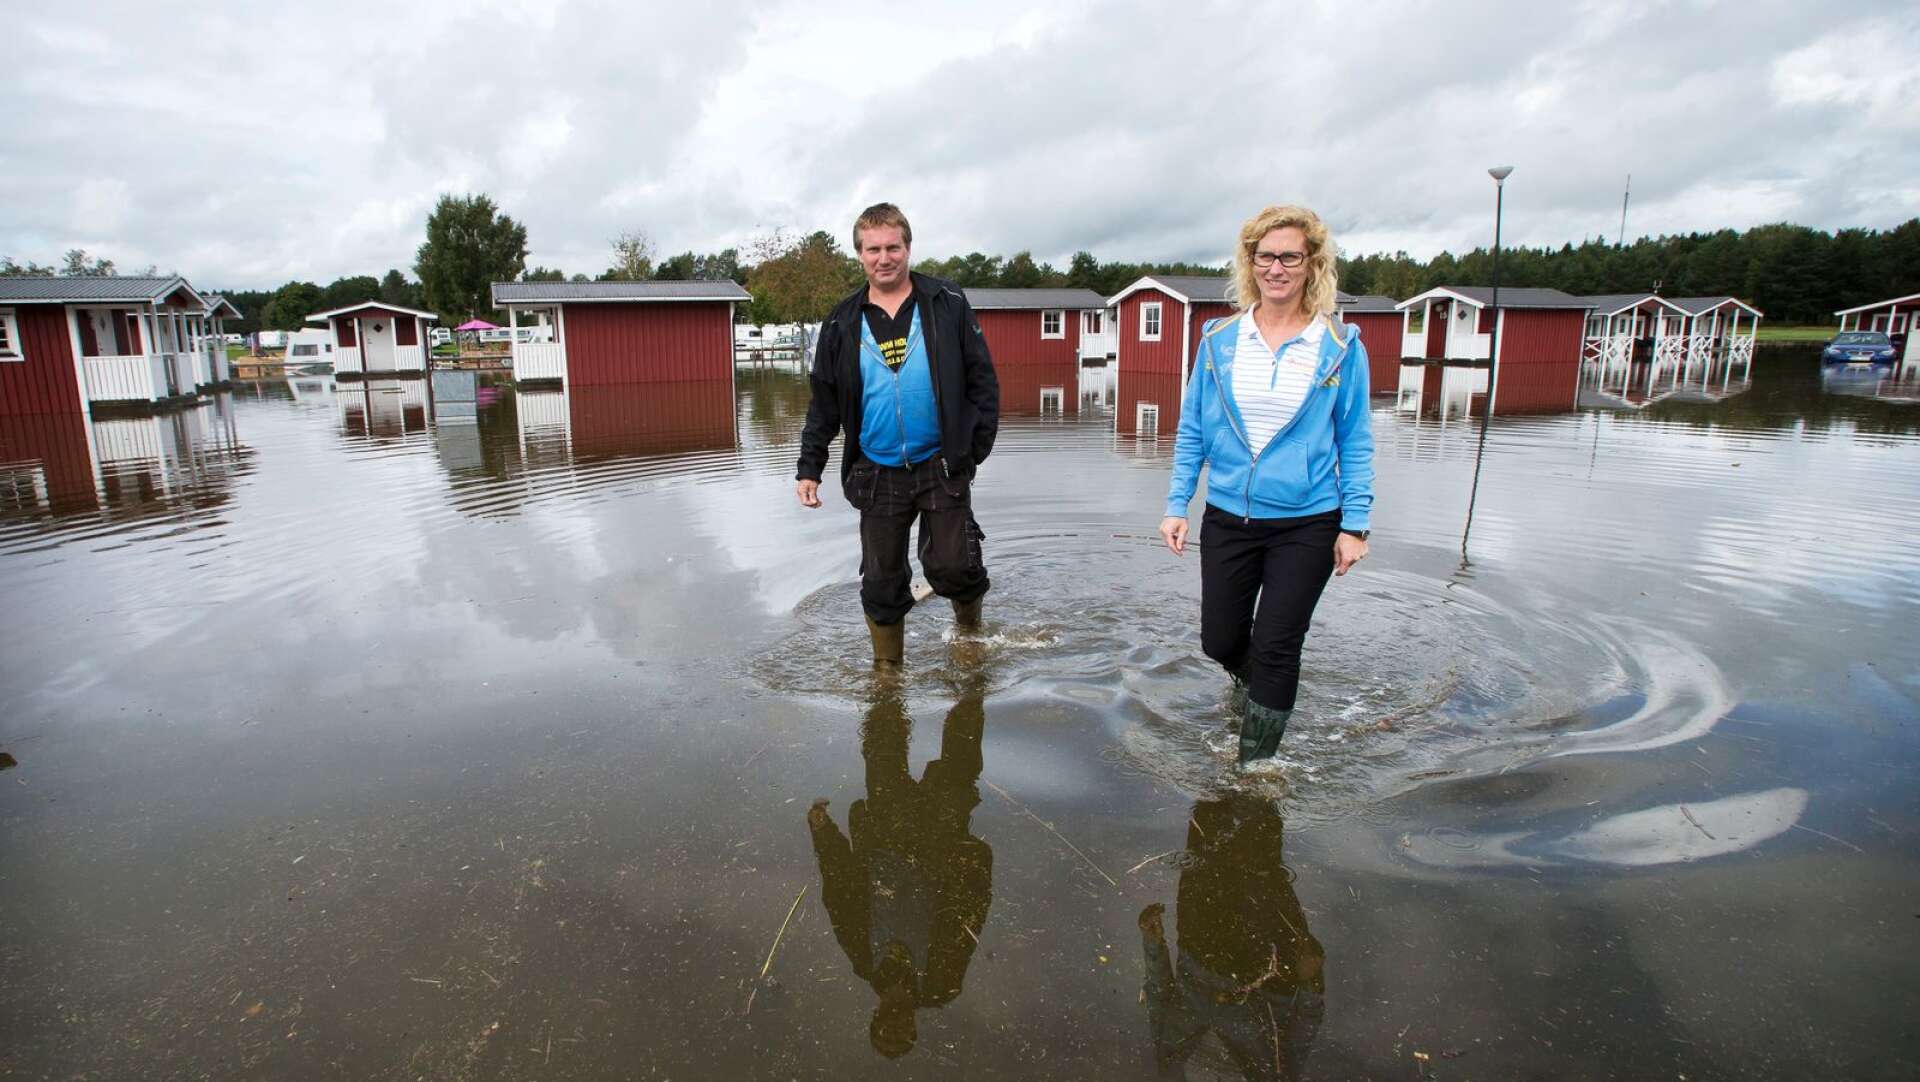 Ett skyfall i augusti 2014 ledde till omfattande översvämningar vid campingen och stugbyn på Skutberget, berättade First camps platschef Jeanette Eriksson.